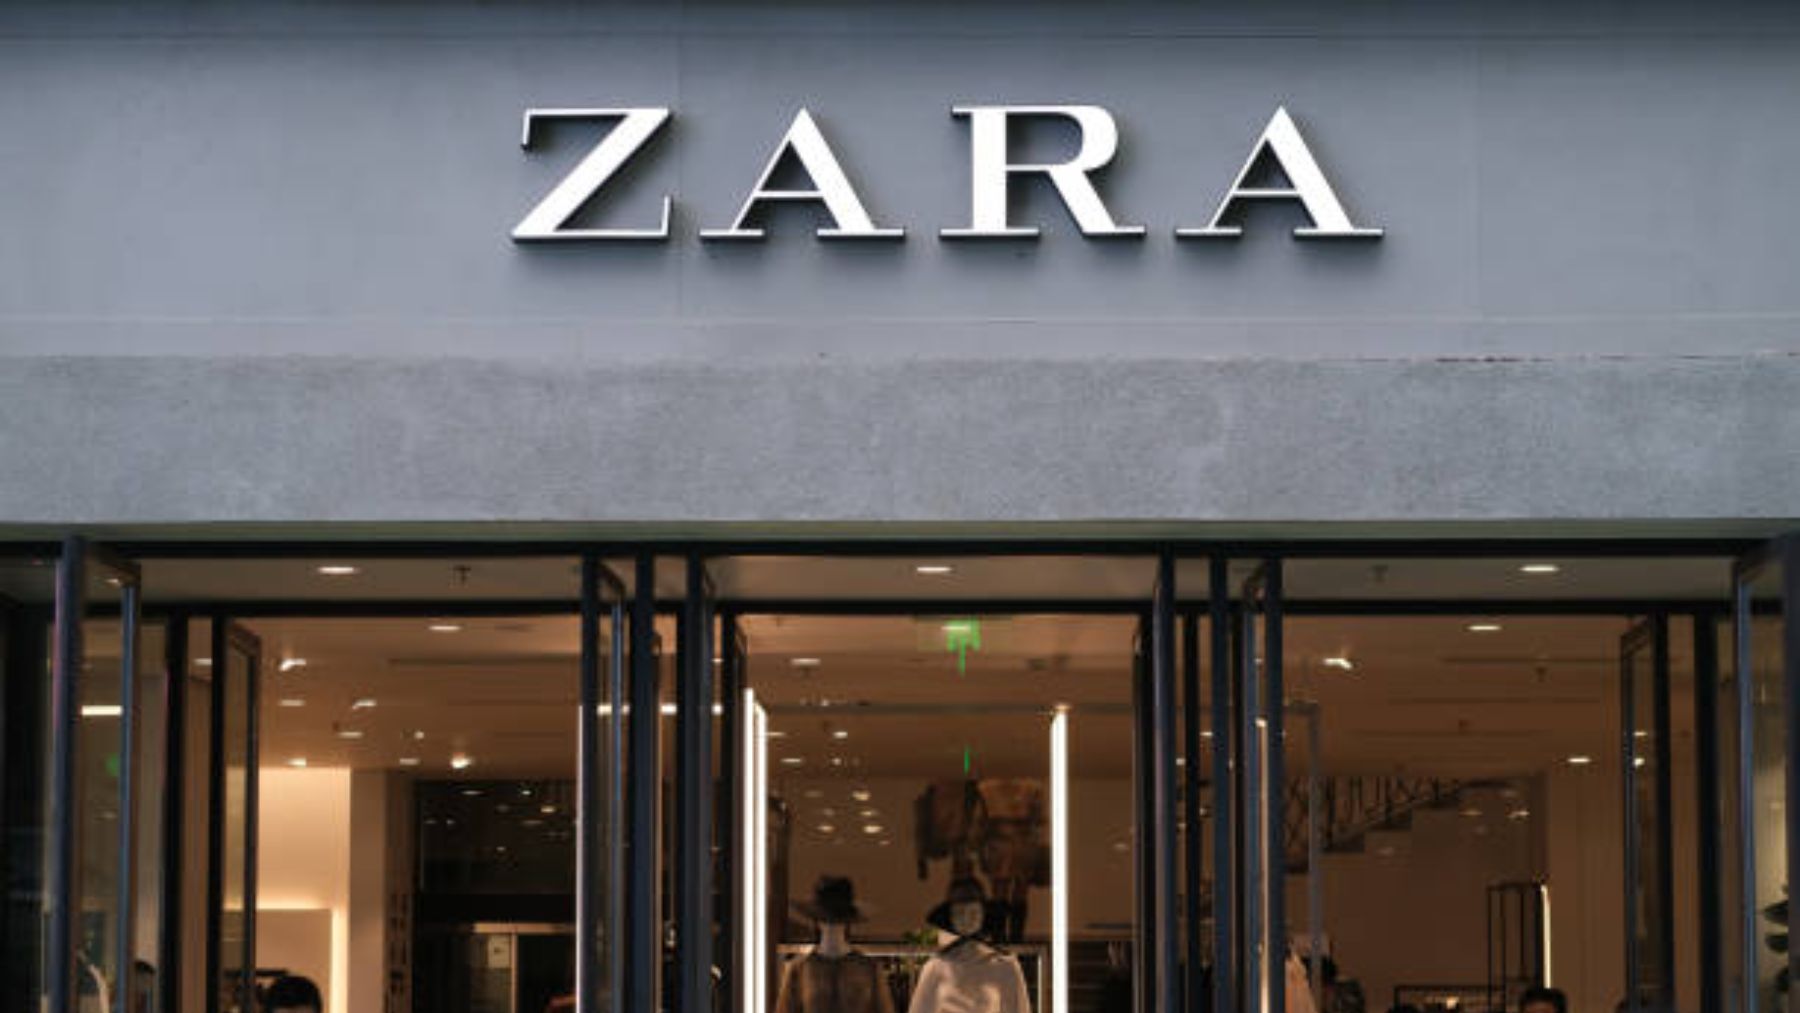 10 vestidos playeros de Zara que no lo parecen y son tendencia para vestir  cómoda y elegante en verano